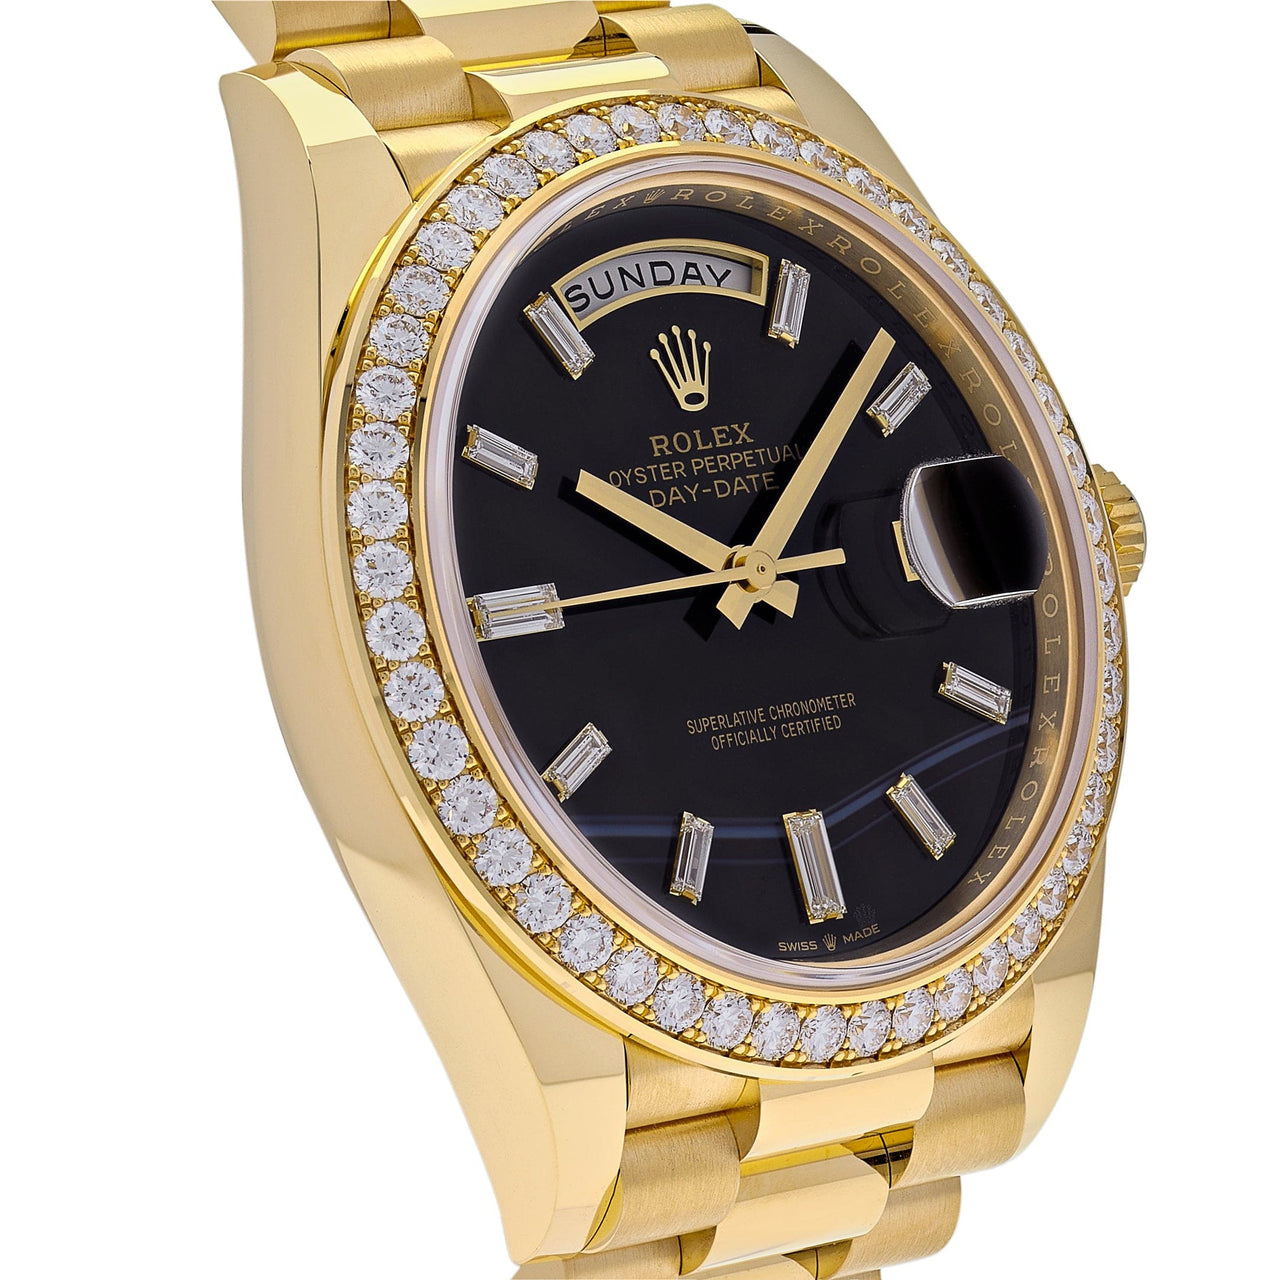 Luxury Watch Rolex Day-Date 40 Yellow Gold Diamond Bezel Black Onyx Dial 228348RBR Wrist Aficionado